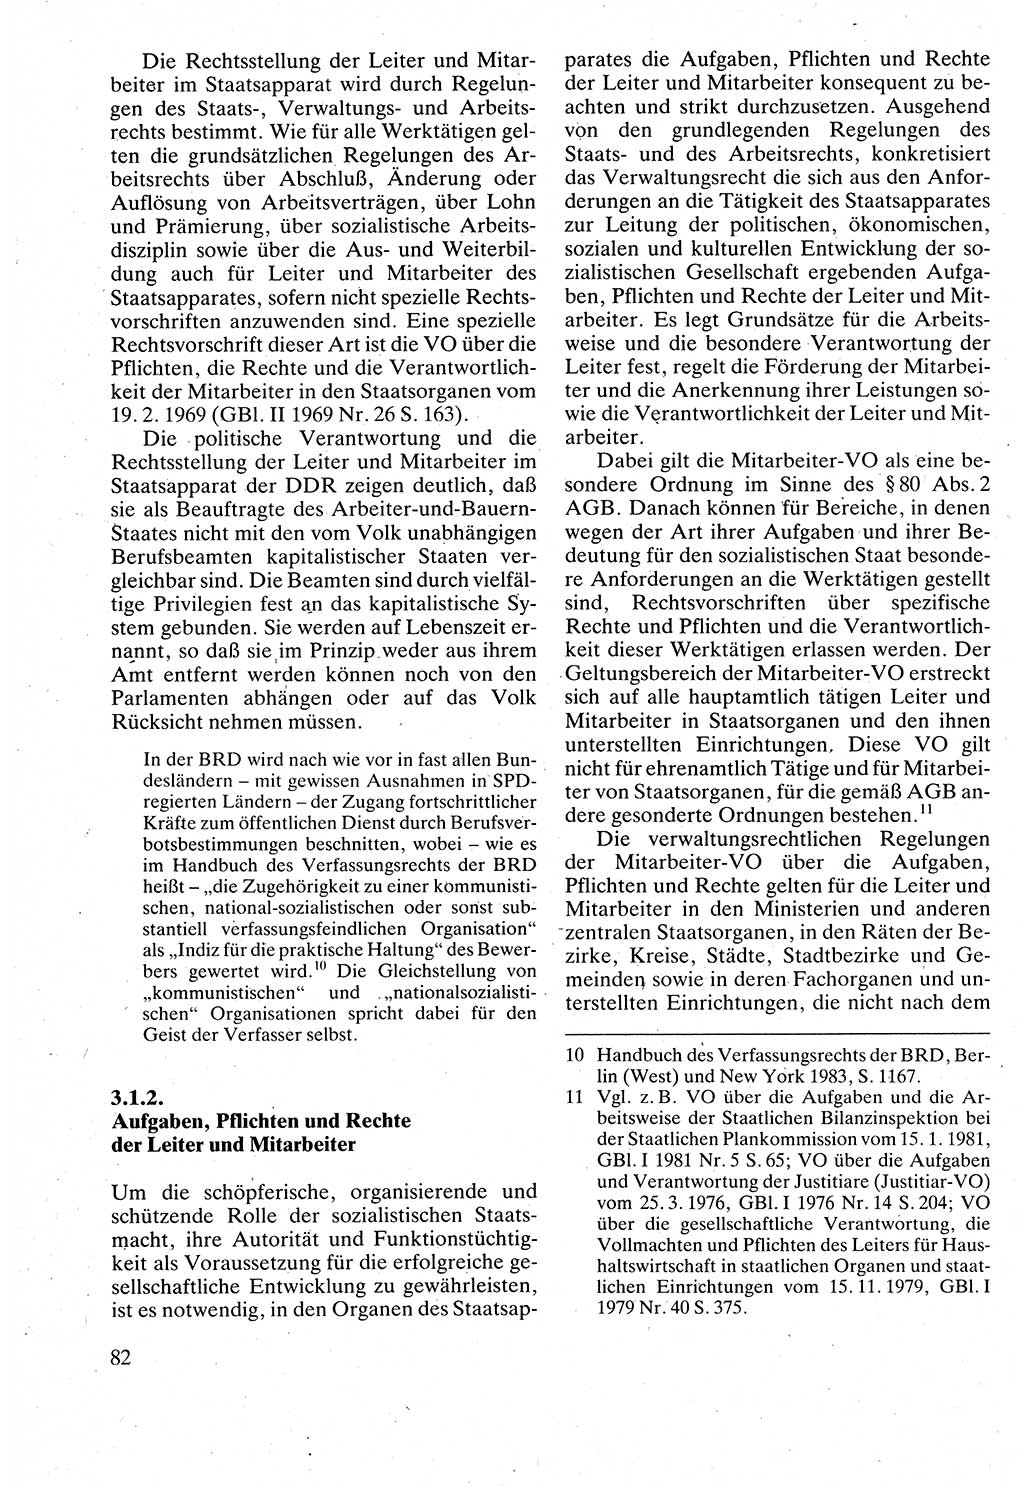 Verwaltungsrecht [Deutsche Demokratische Republik (DDR)], Lehrbuch 1988, Seite 82 (Verw.-R. DDR Lb. 1988, S. 82)